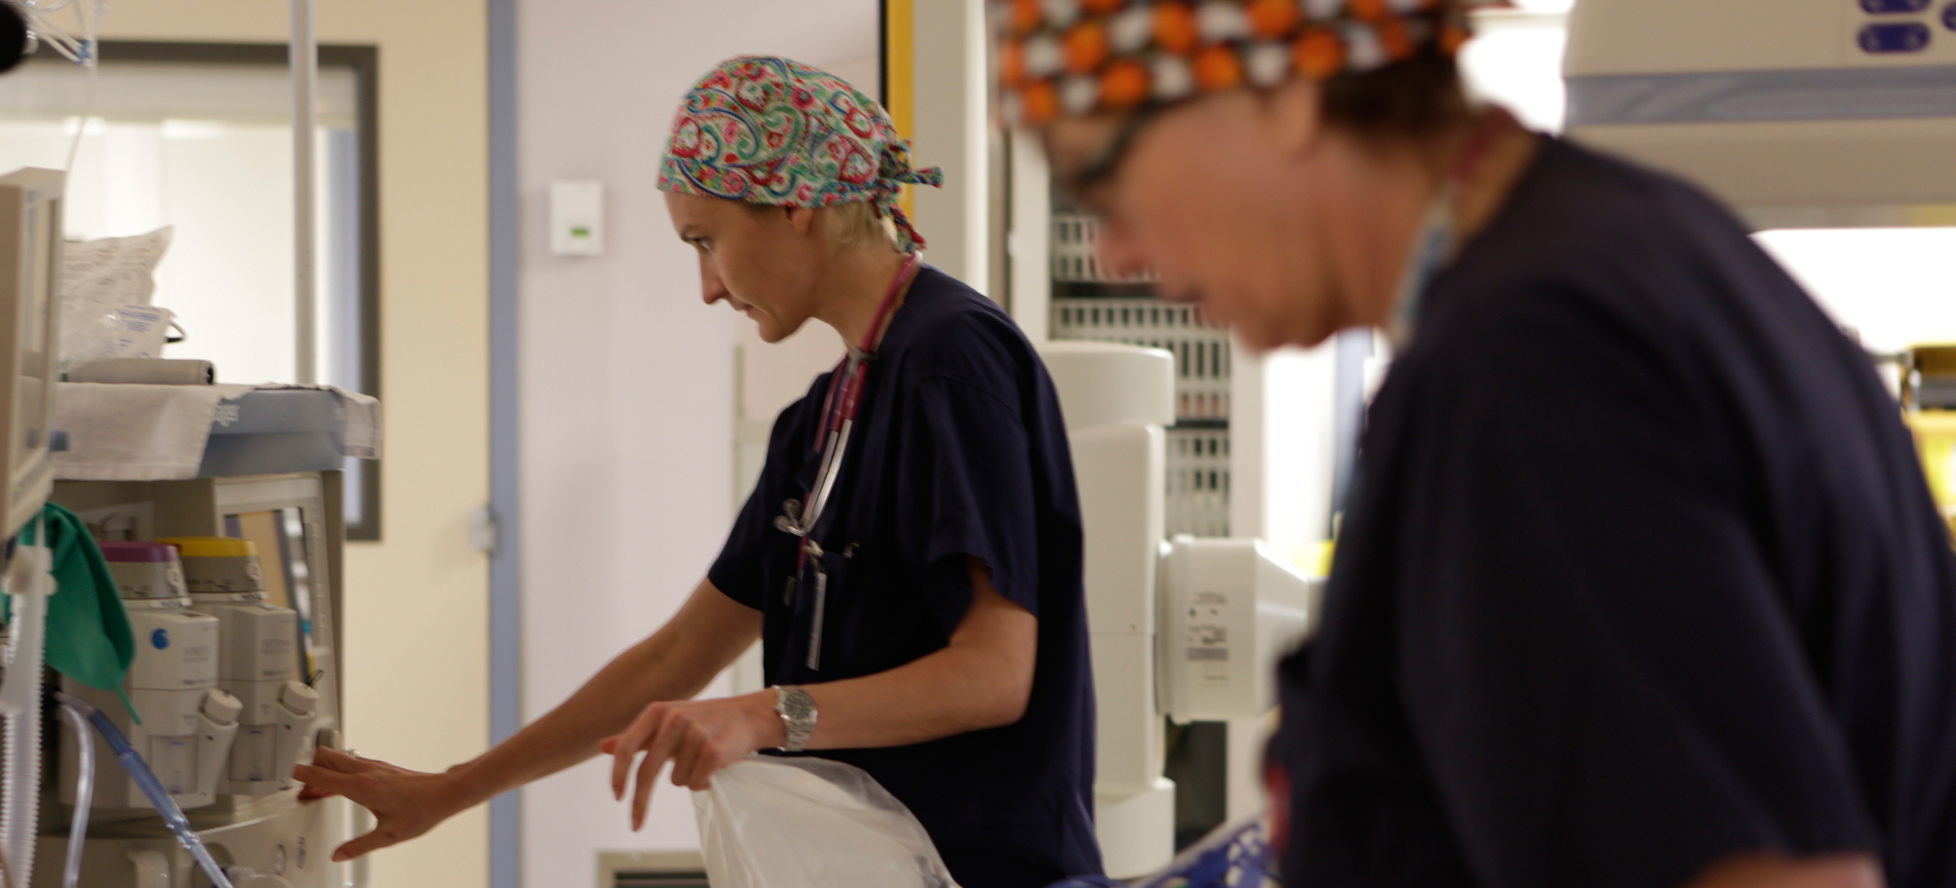 SickKids nurses in scrubs in hospital room